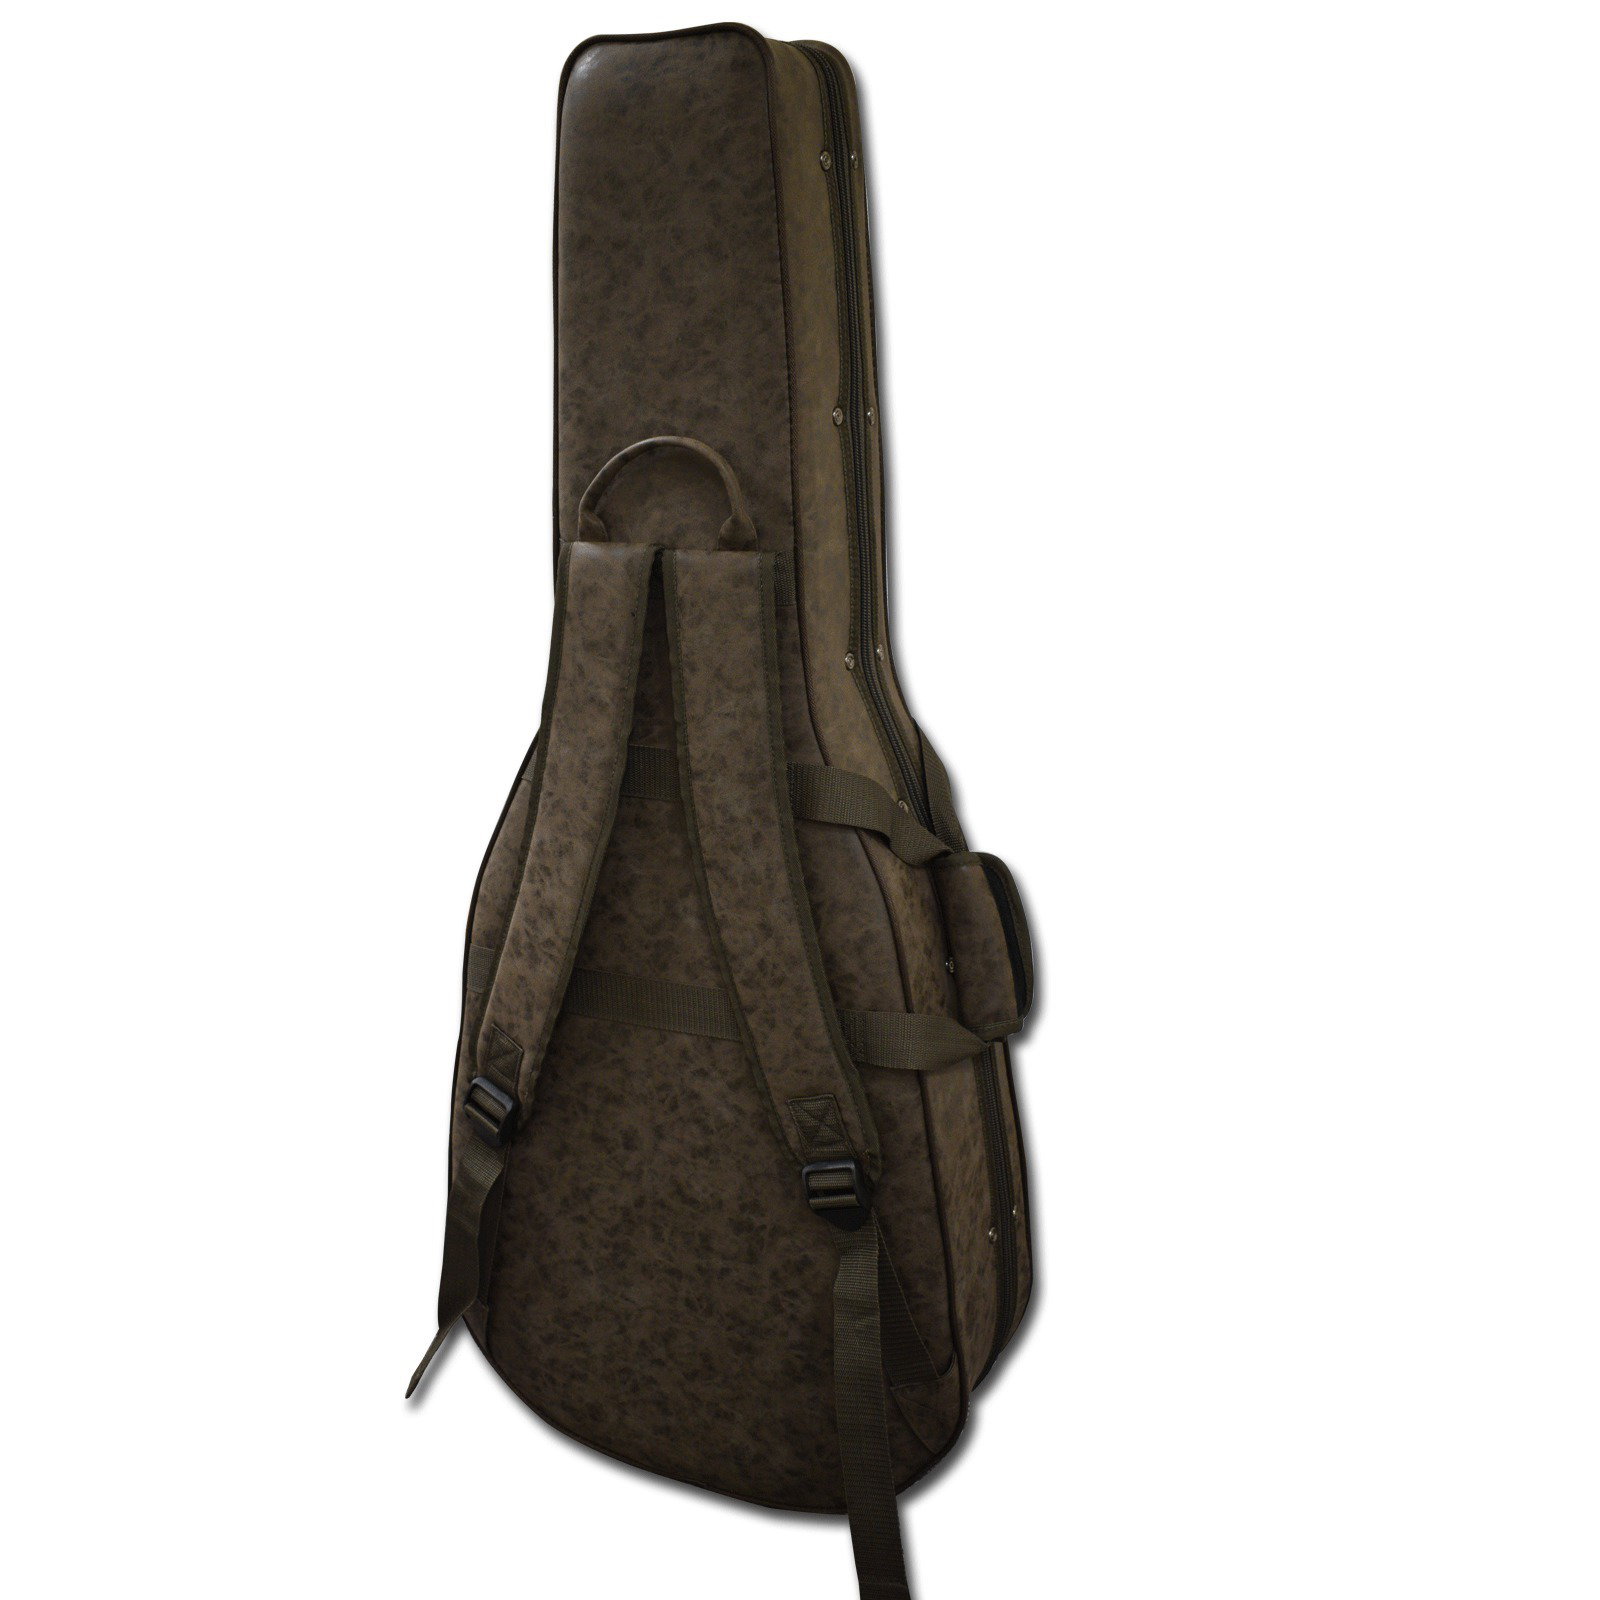 Ortega RCE555 Classical Guitar padded bag